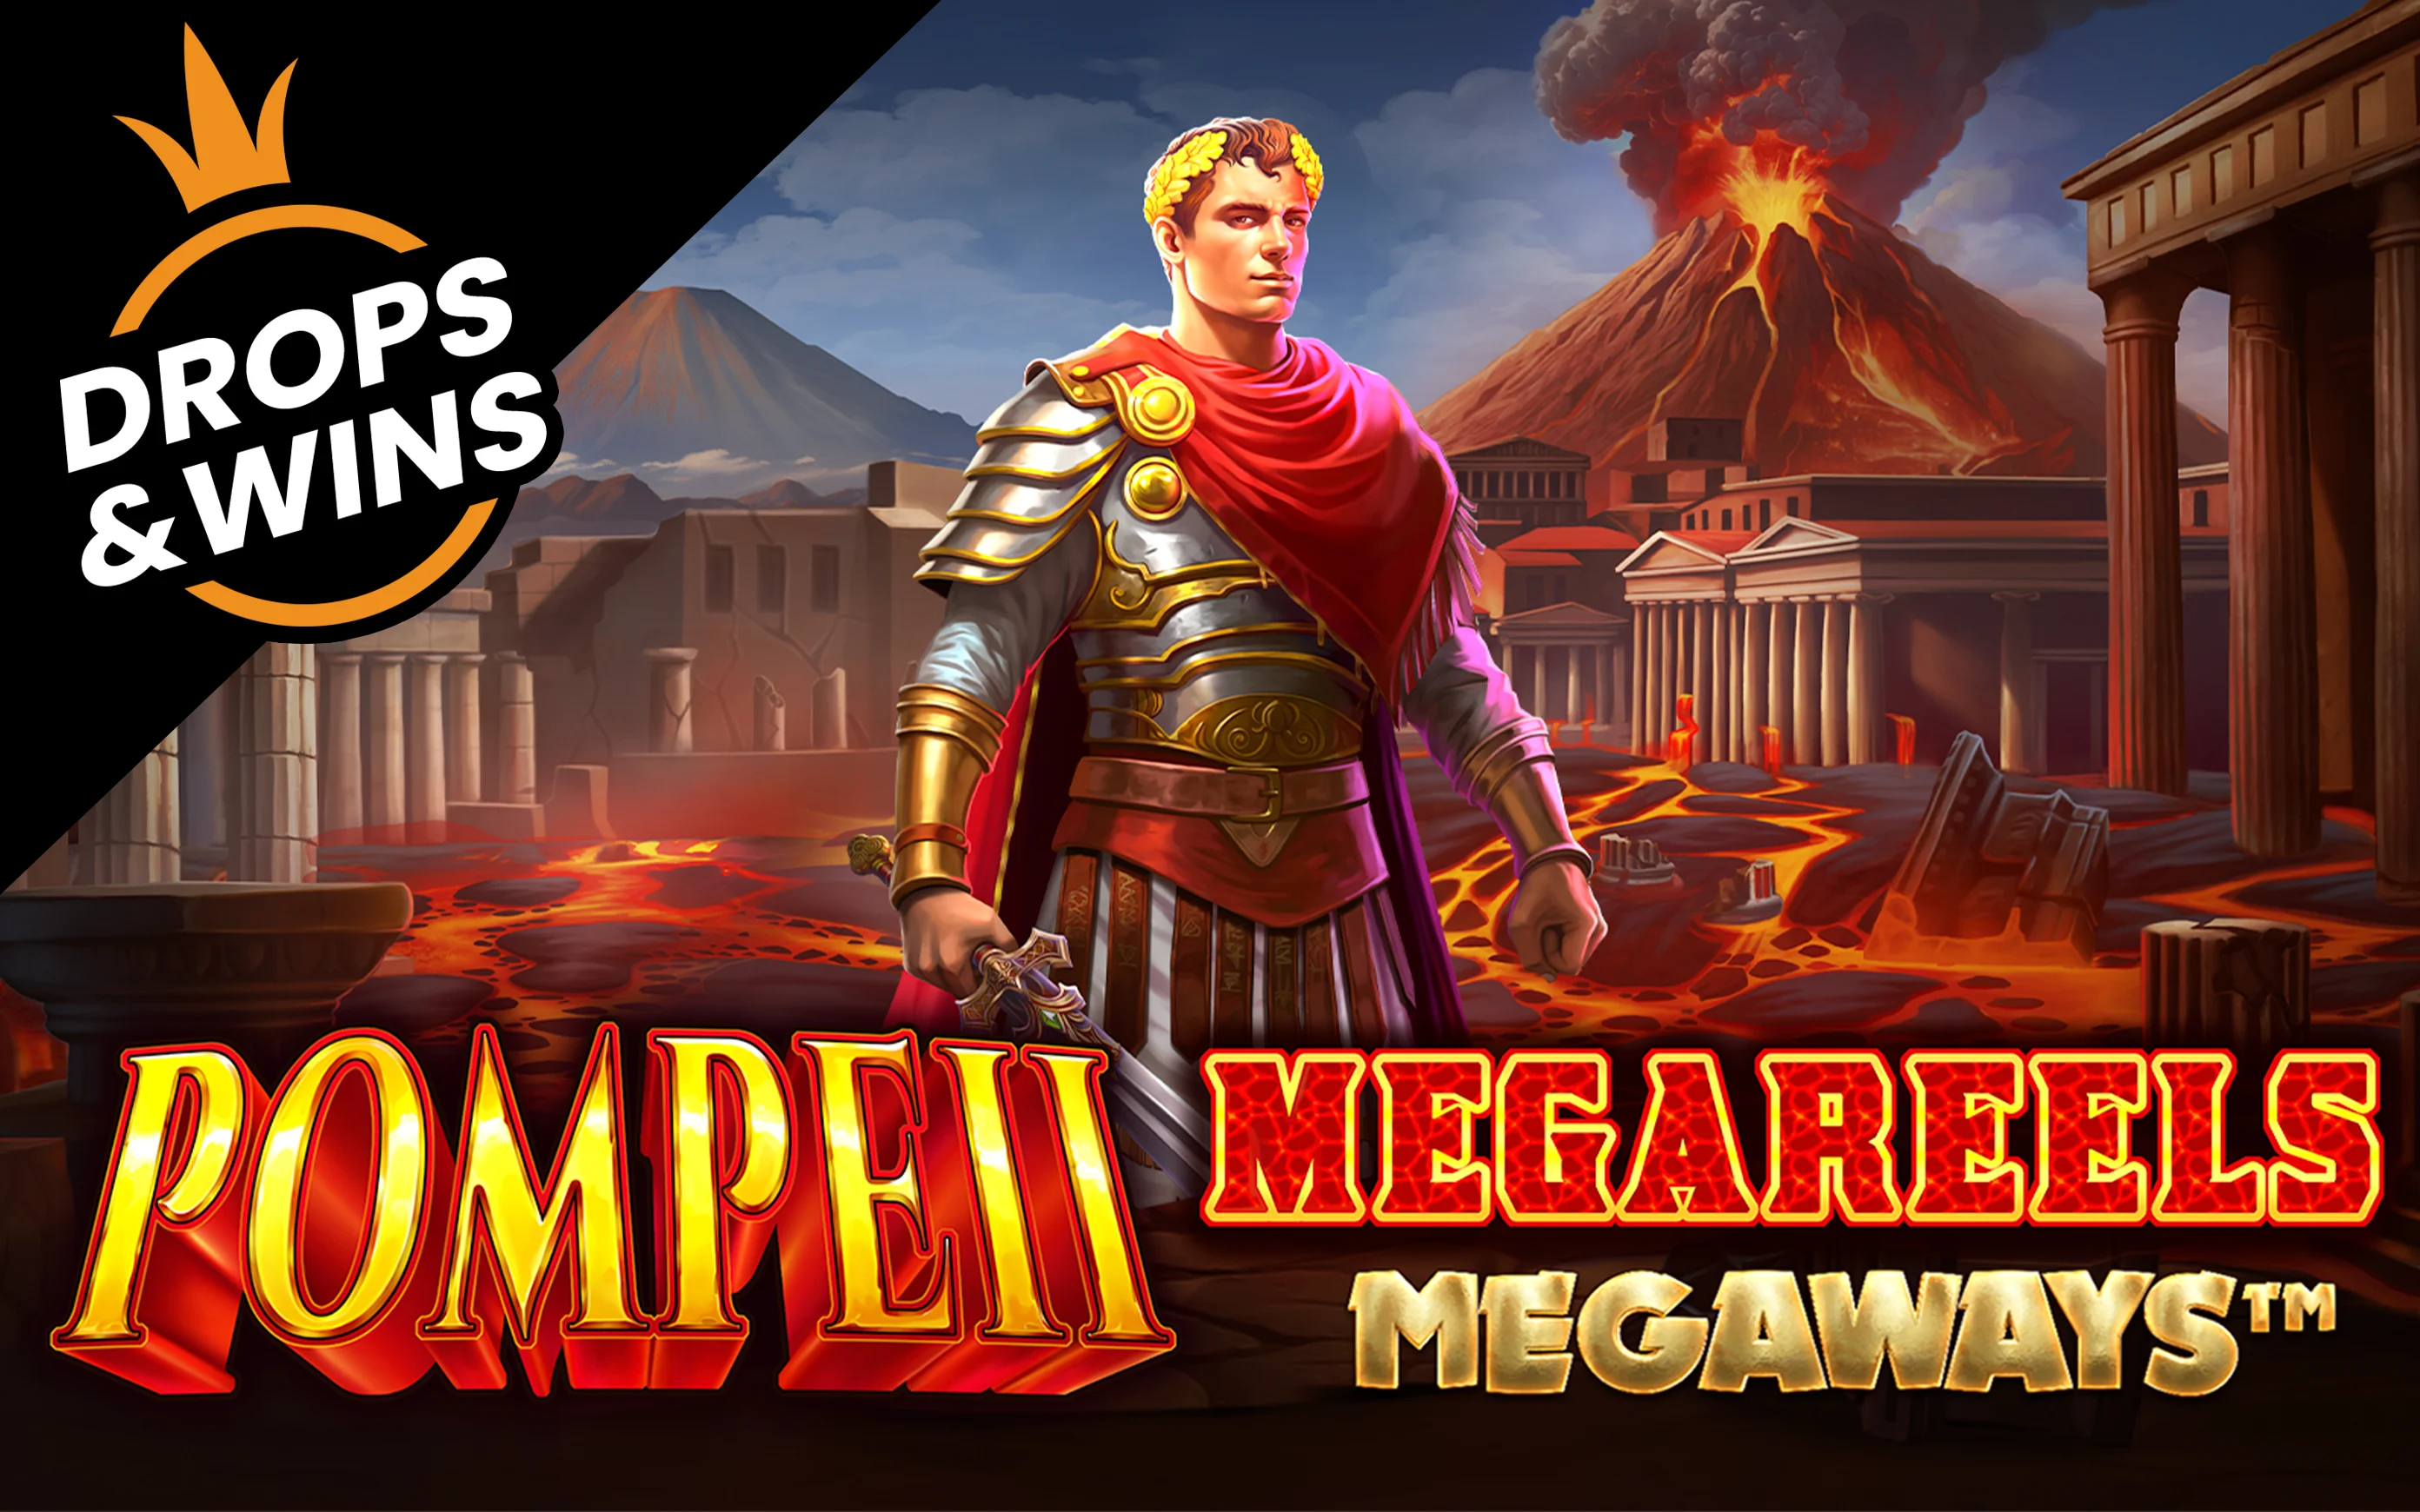 เล่น Pompeii Megareels Megaways™ บนคาสิโนออนไลน์ Starcasino.be